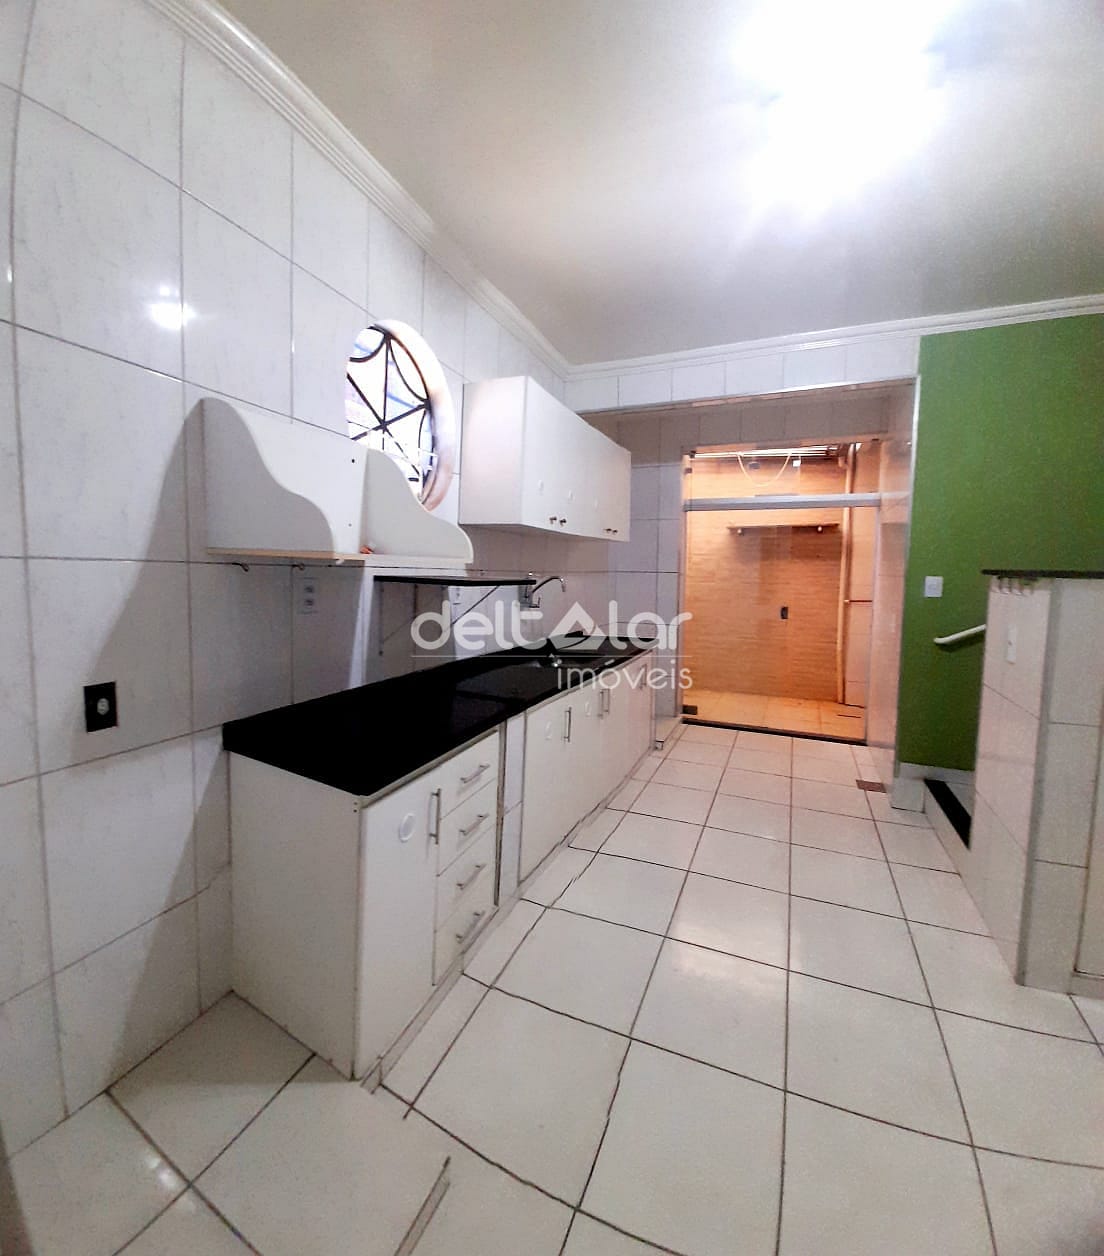 Casa em Santa Mônica, Belo Horizonte/MG de 70m² 2 quartos à venda por R$ 284.000,00